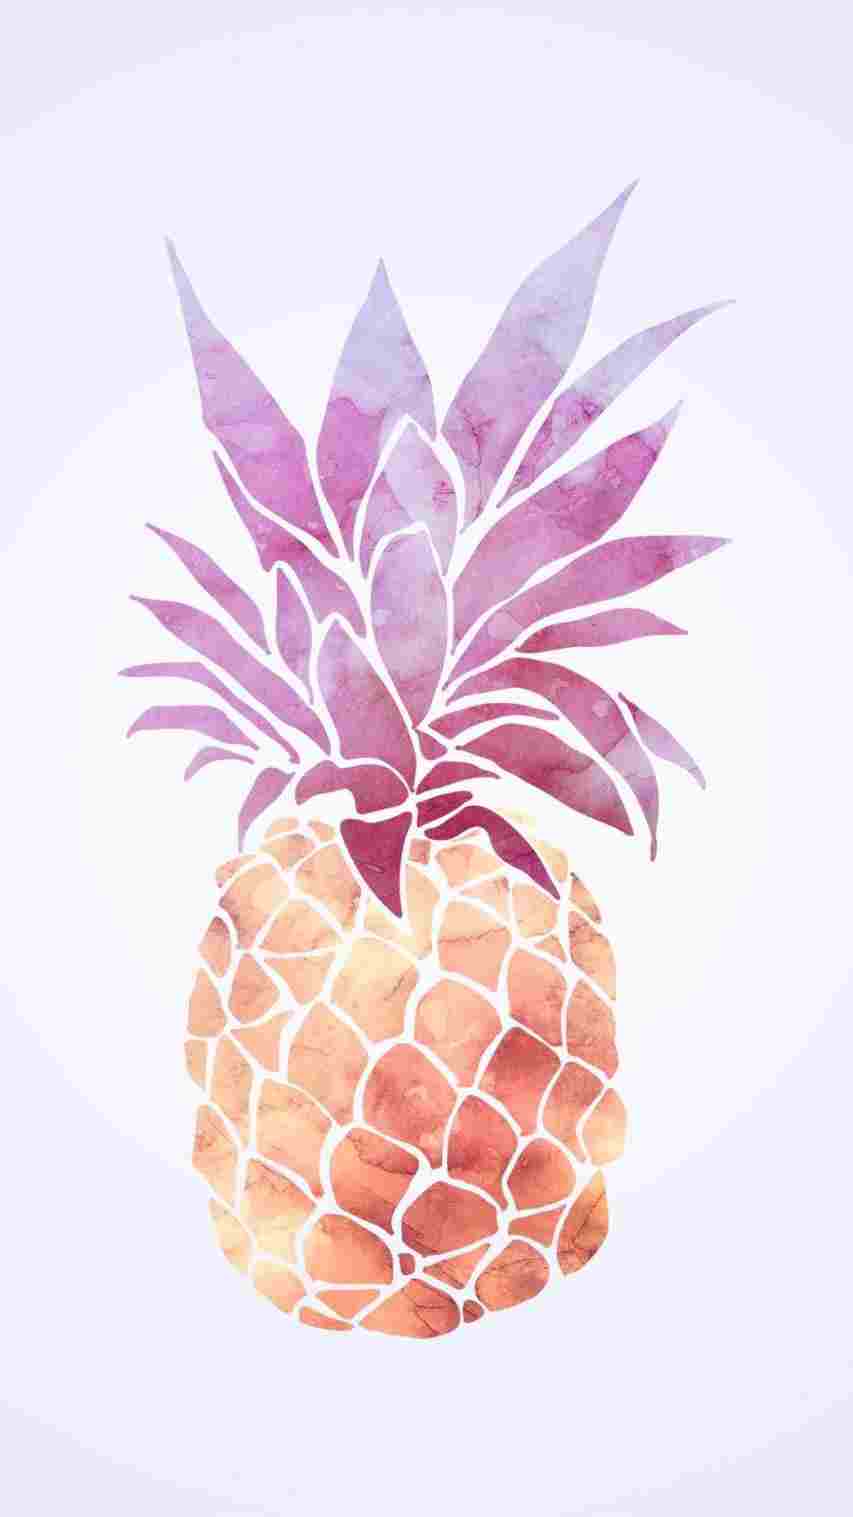 Golden pineapple tumblr